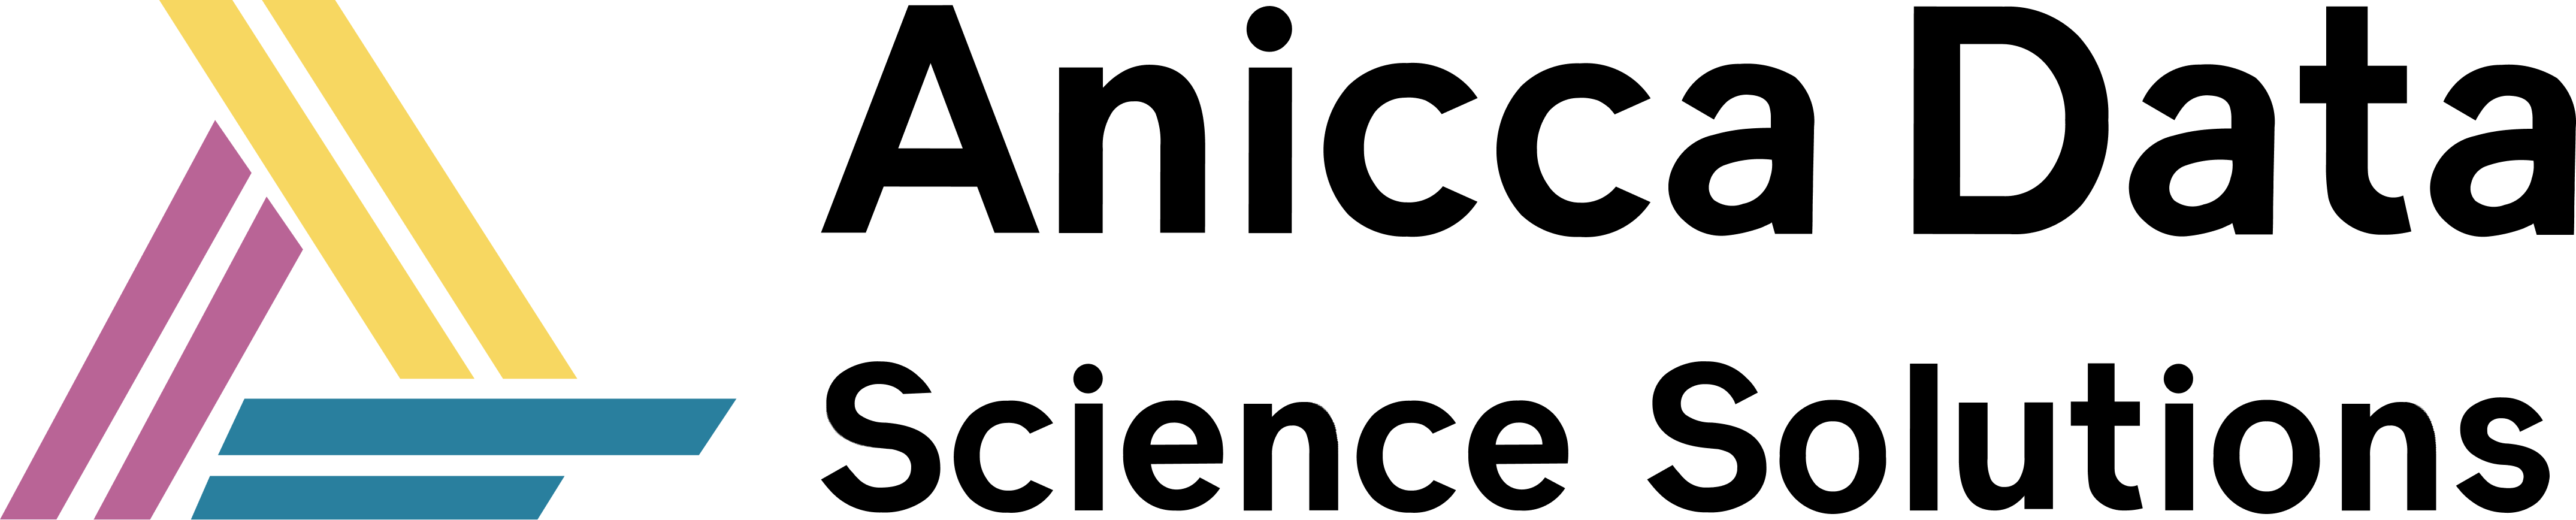 Anicca logo